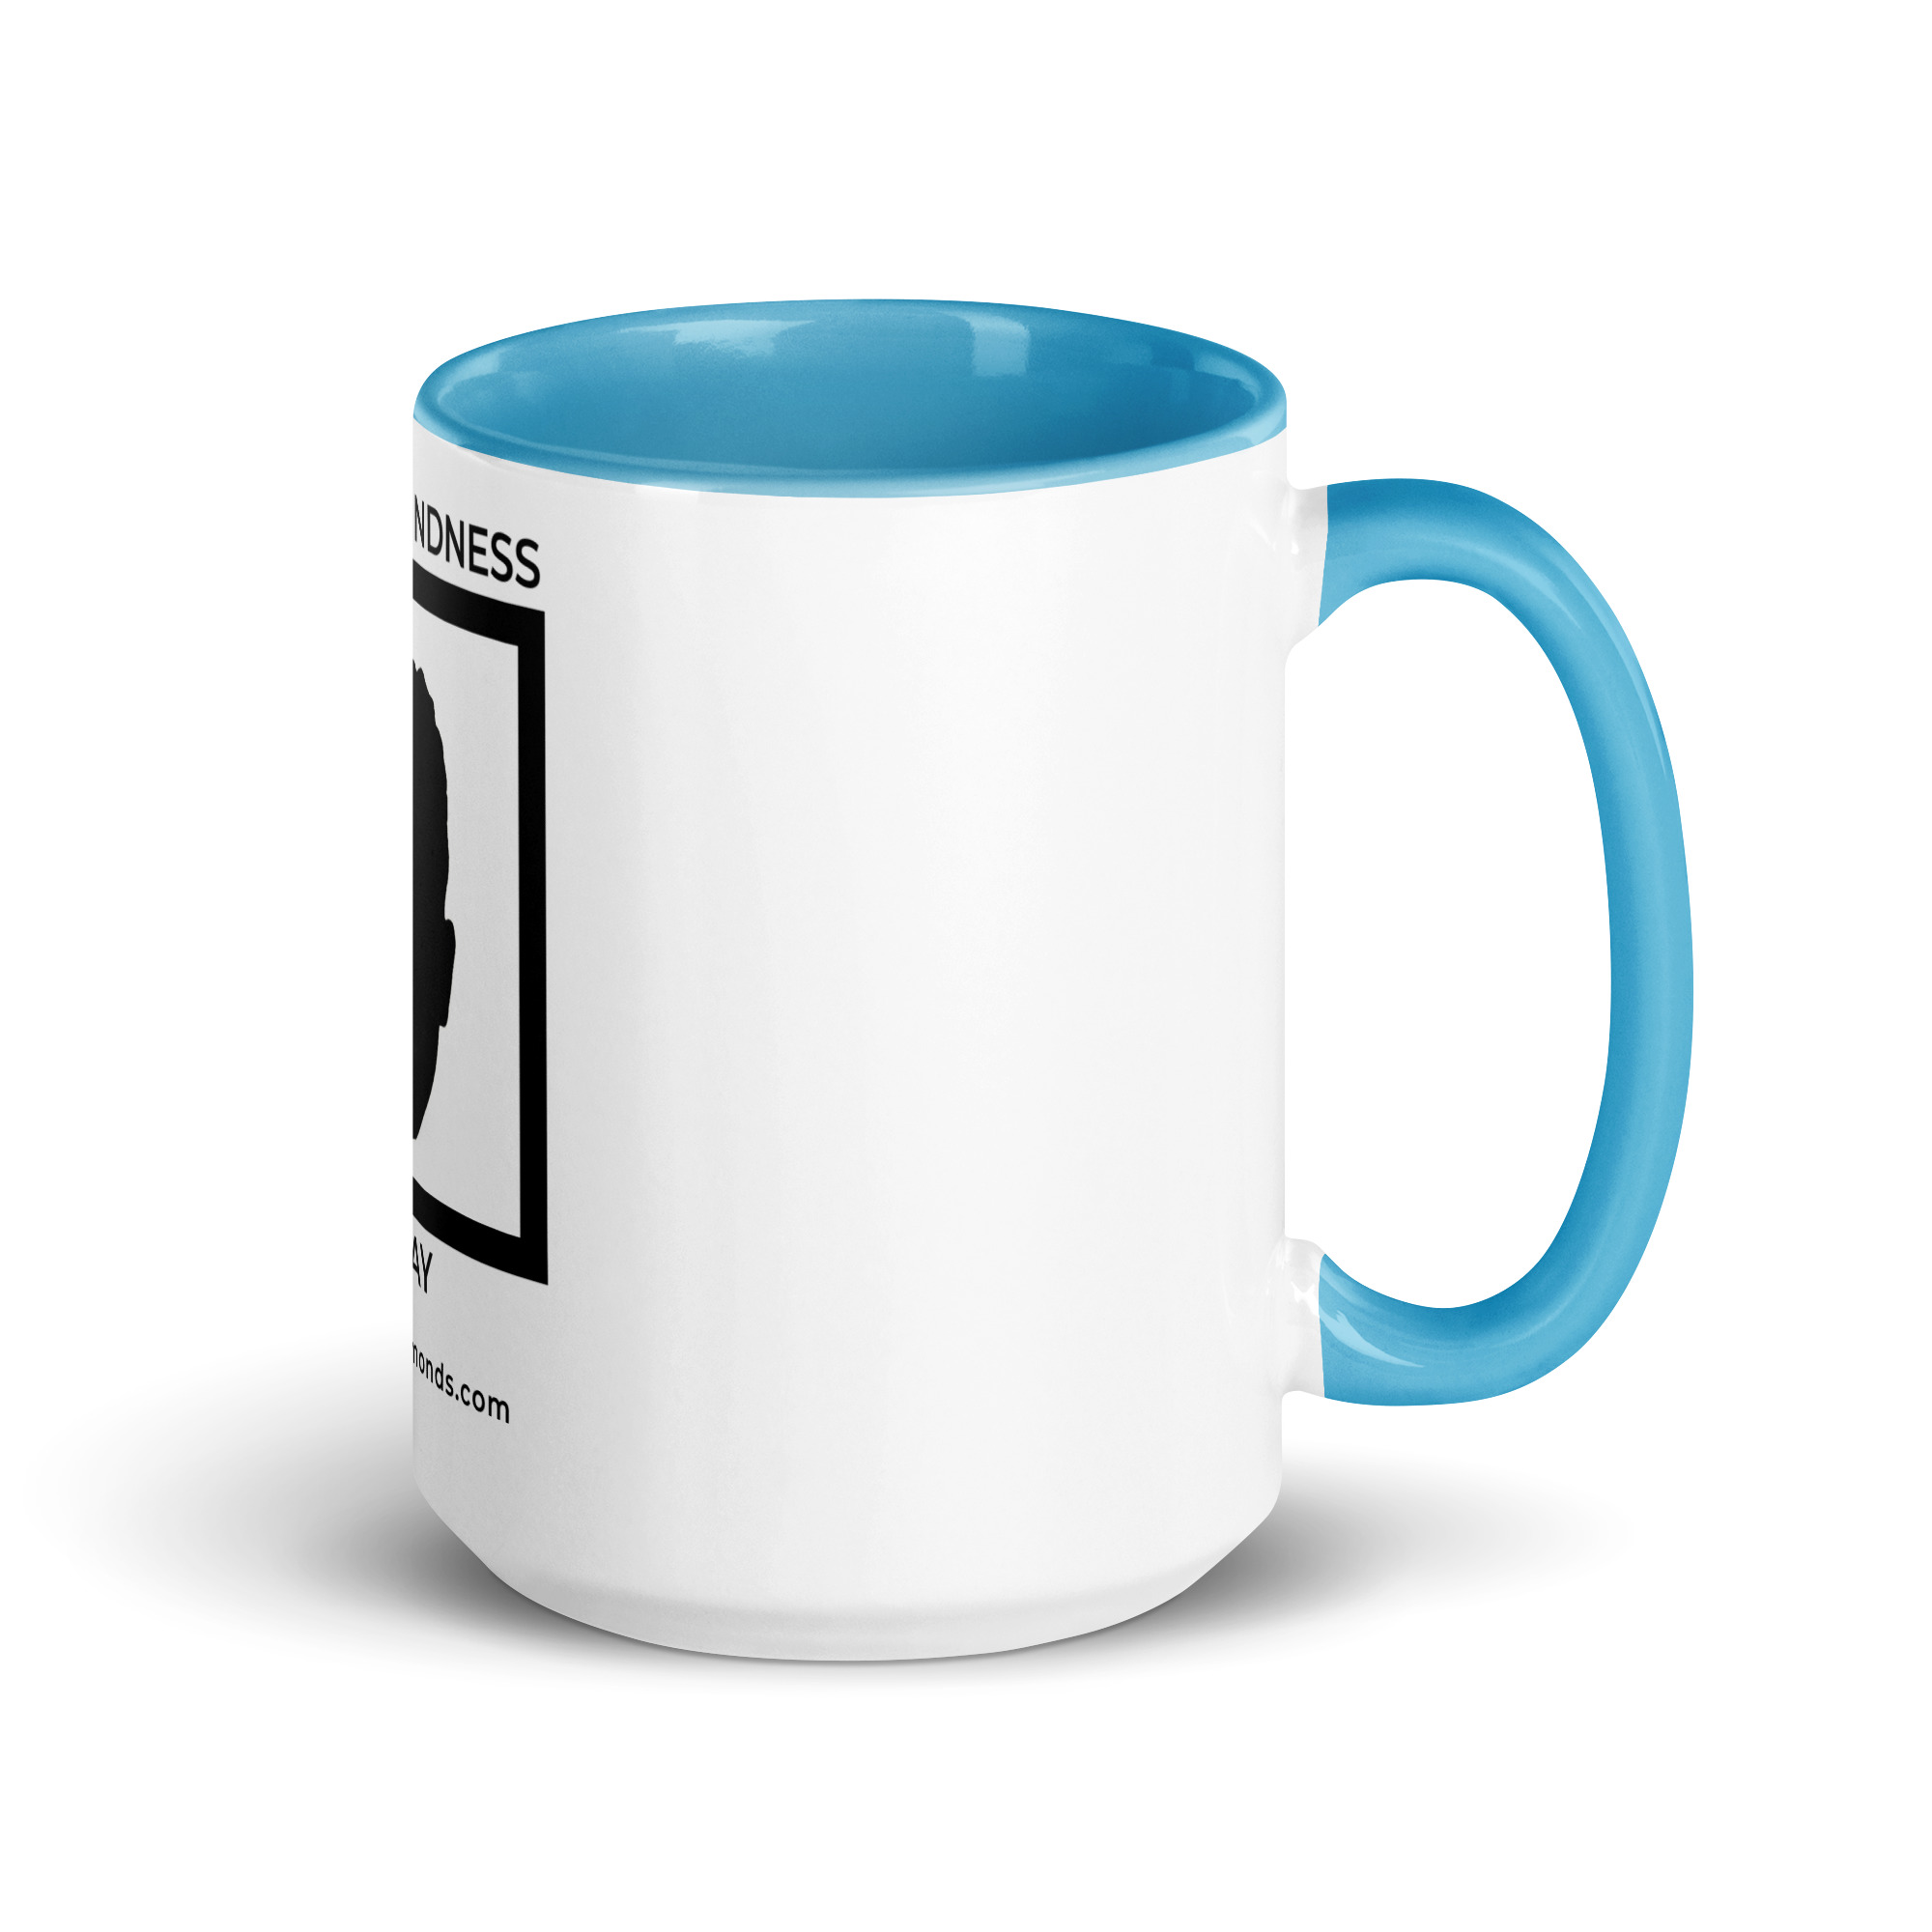 white-ceramic-mug-with-color-inside-blue-15-oz-right-6522a1a40415e.jpg